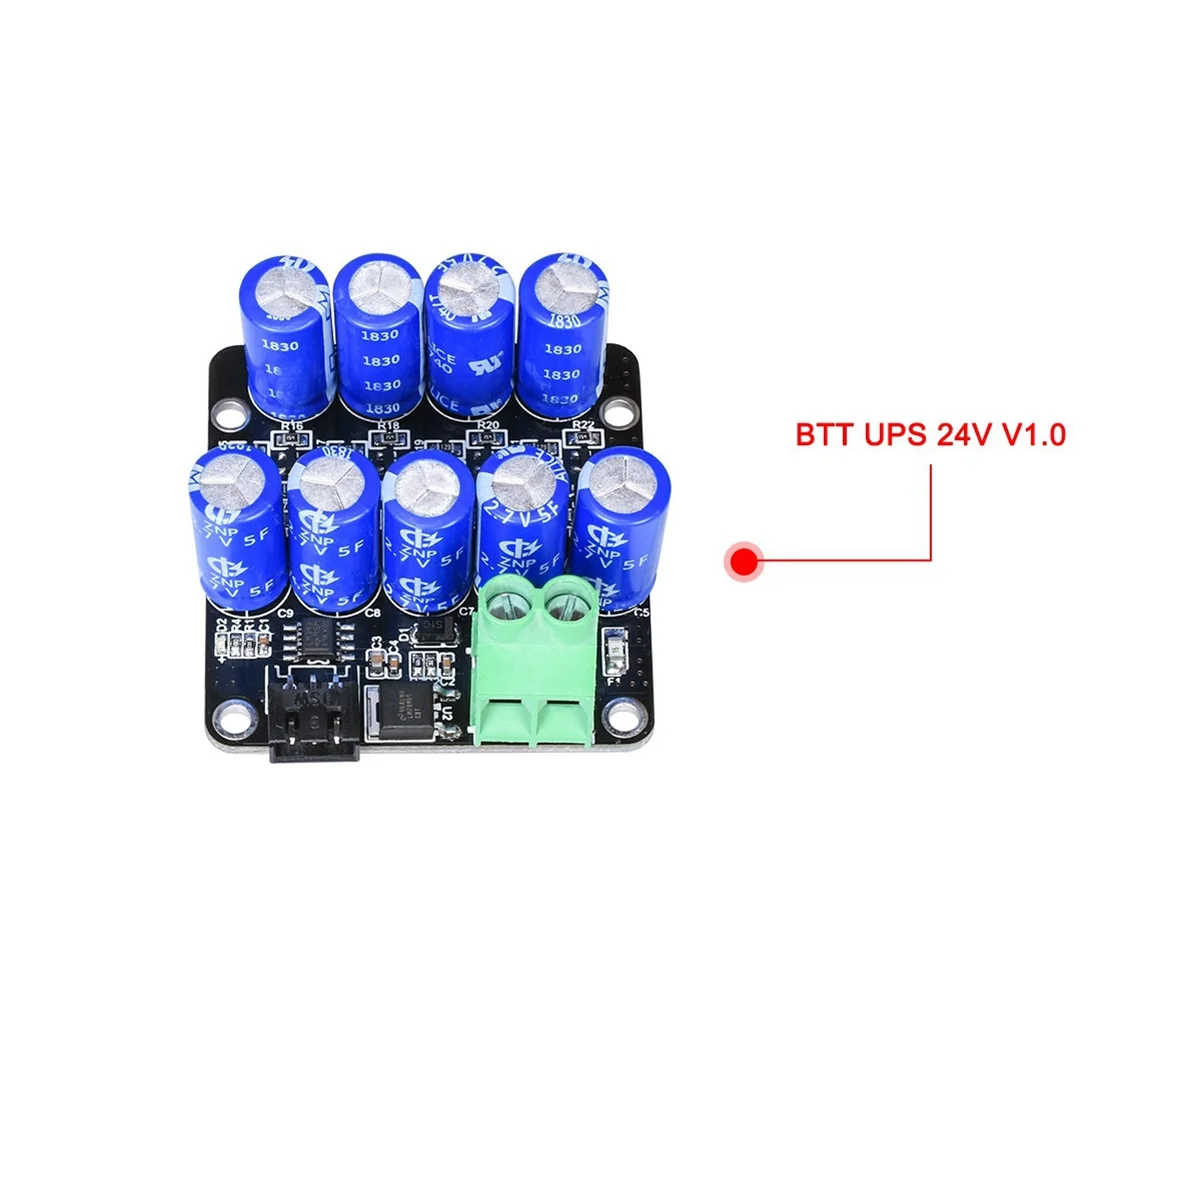 

BIGTREETECH BTT UPS 24V V1.0 Resume Printing While Power Off Module for SKR V1.3 Ender-3 CR-10 3D Printer Parts